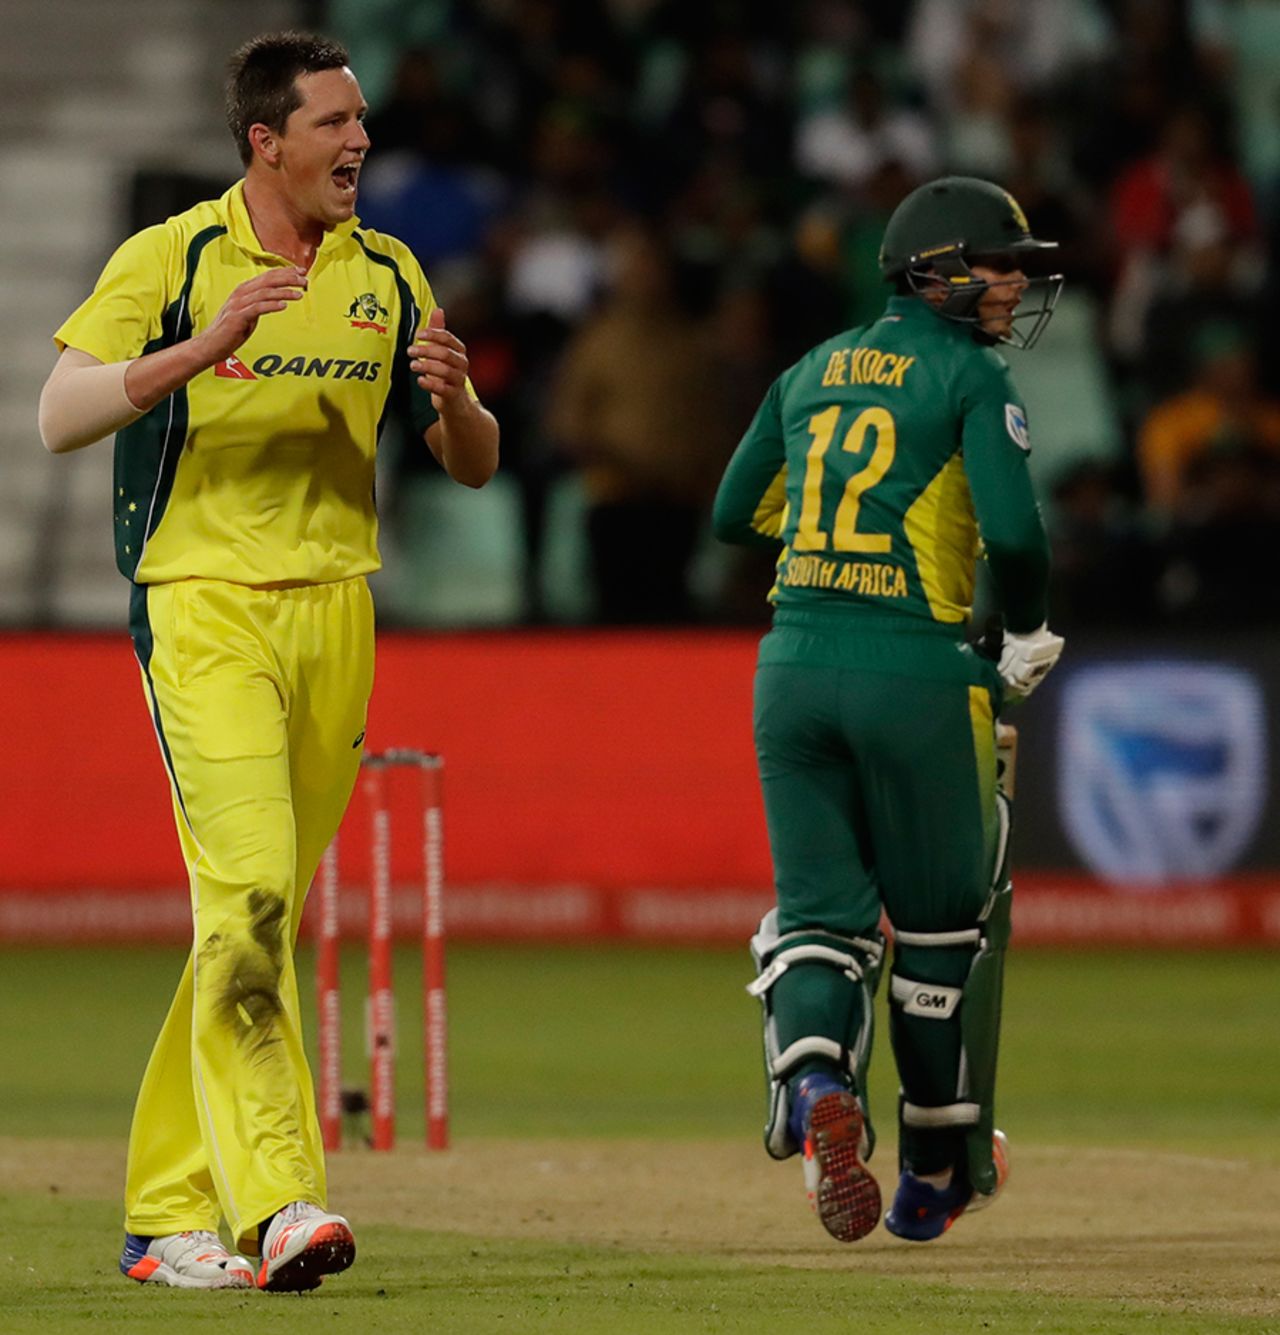 Chris Tremain dismissed Quinton de Kock for 70, Australia v South Africa, 3rd ODI, Durban, October 5, 2016